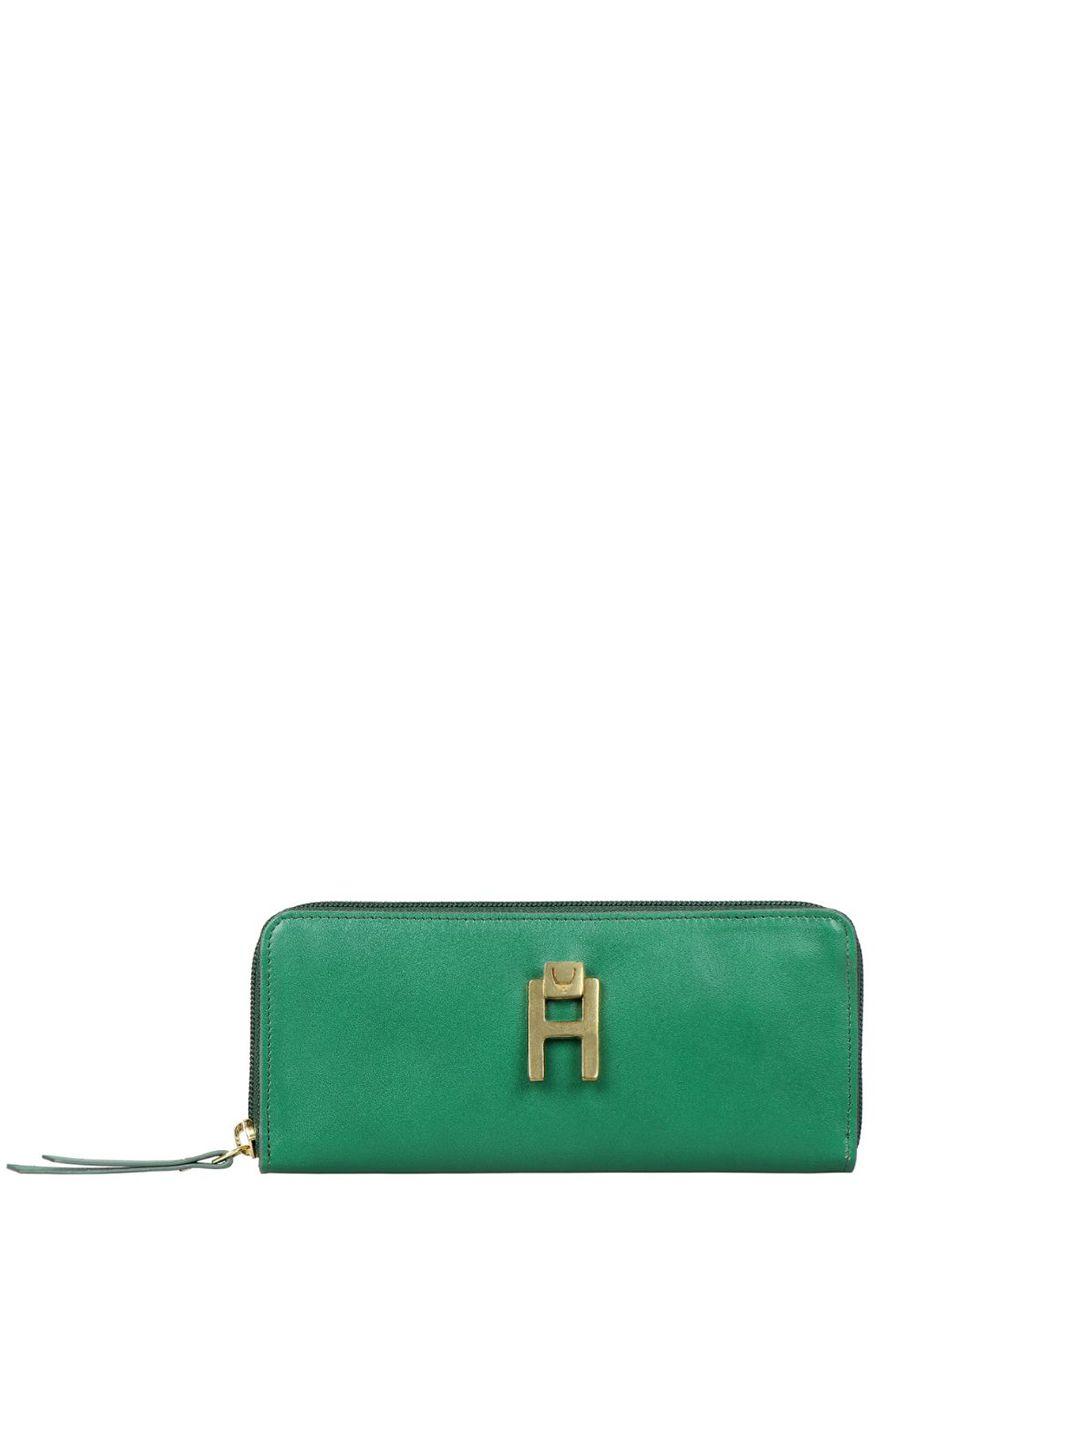 hidesign-women-green-purse